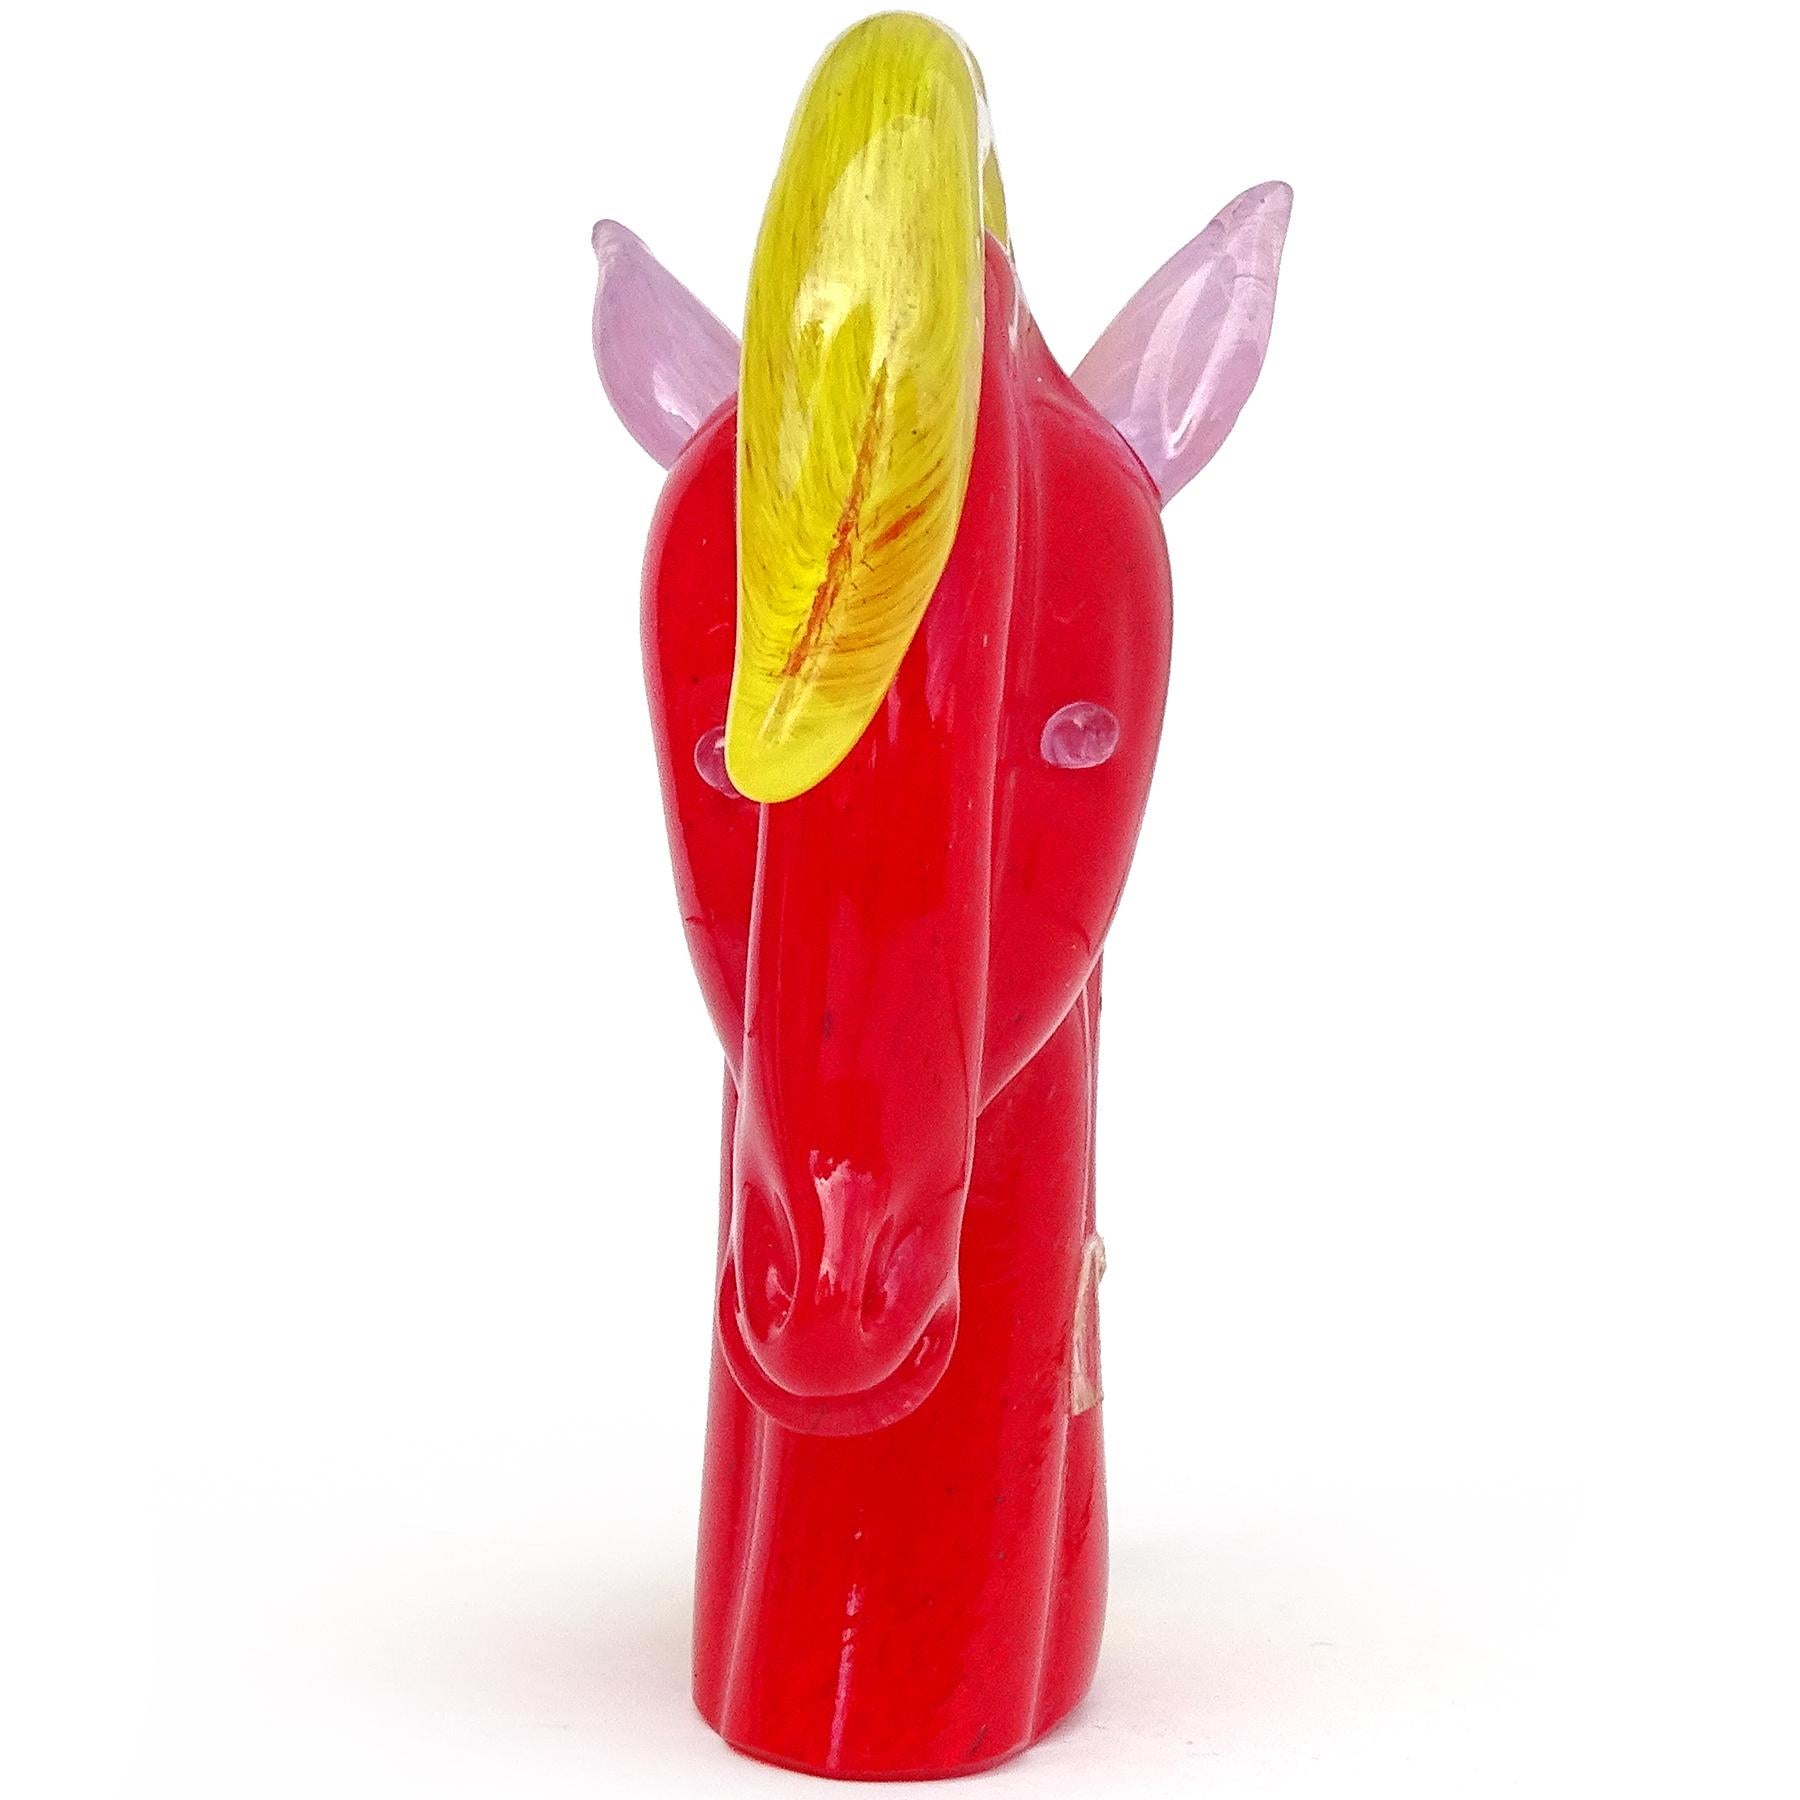 Magnifique figurine / sculpture de tête de cheval en verre d'art italien de Murano soufflé à la main en rouge vif, jaune et lavande. La pièce est documentée comme provenant de la société Gambaro & Poggi, avec une étiquette d'origine (mais usée sur